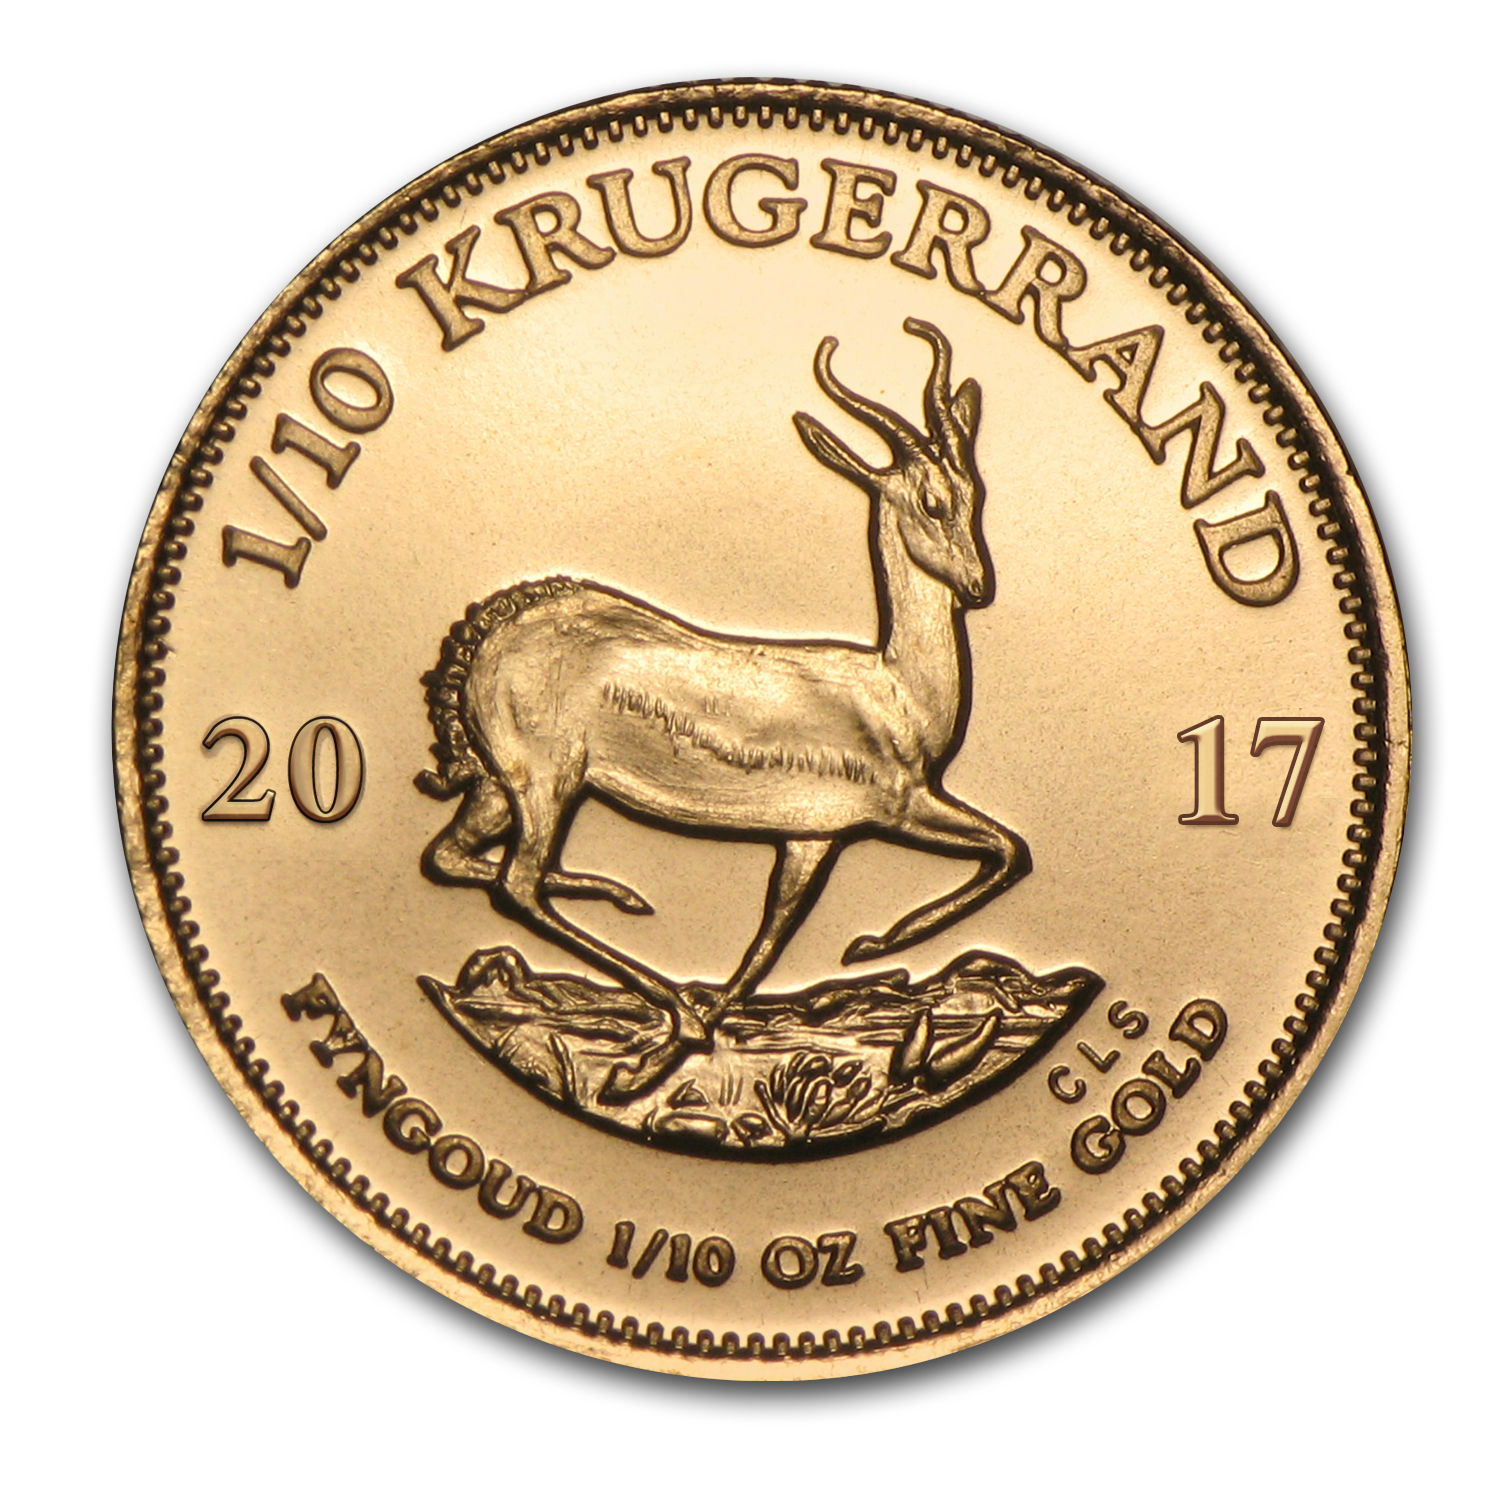 2017 South Africa 1/10 oz Gold Krugerrand - SKU #117277